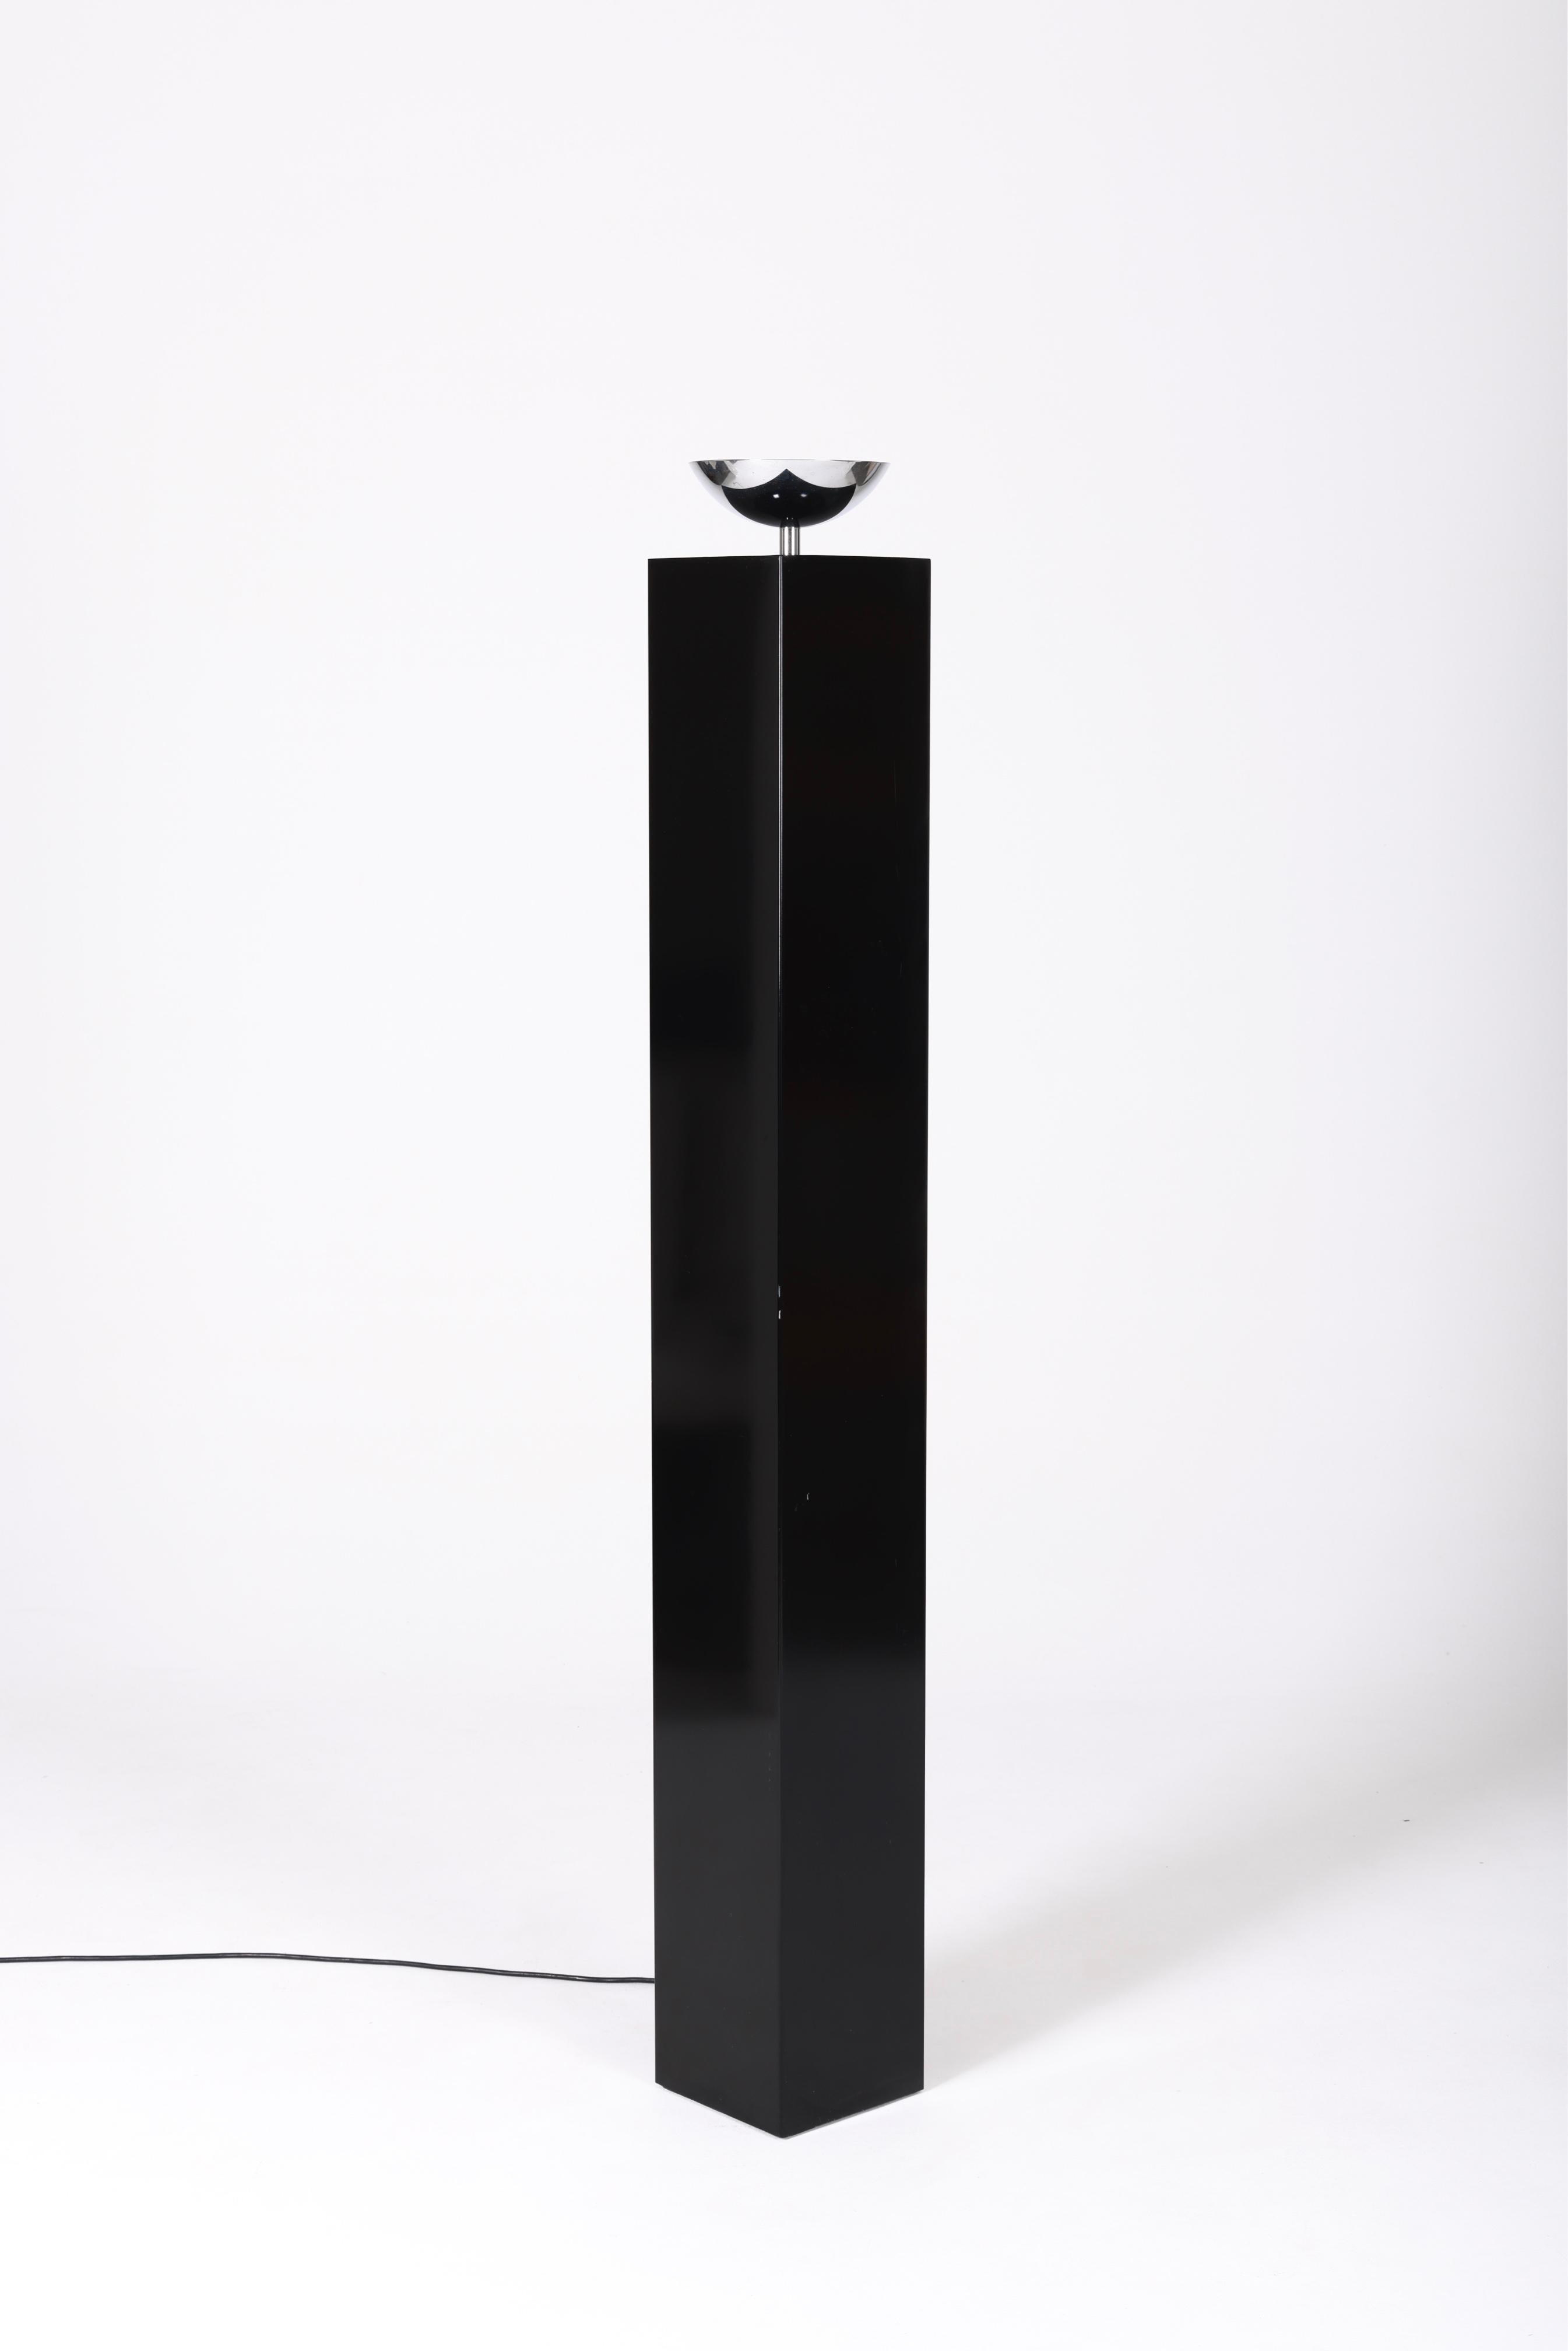 10582 Straßenlaterne von Michel Boyer, herausgegeben von Verre Lumière, aus den 1980er Jahren, Frankreich. Struktur aus glänzend schwarz lackiertem Metall, Reflektor aus verchromtem Metall. Sehr guter Zustand.
LP1110